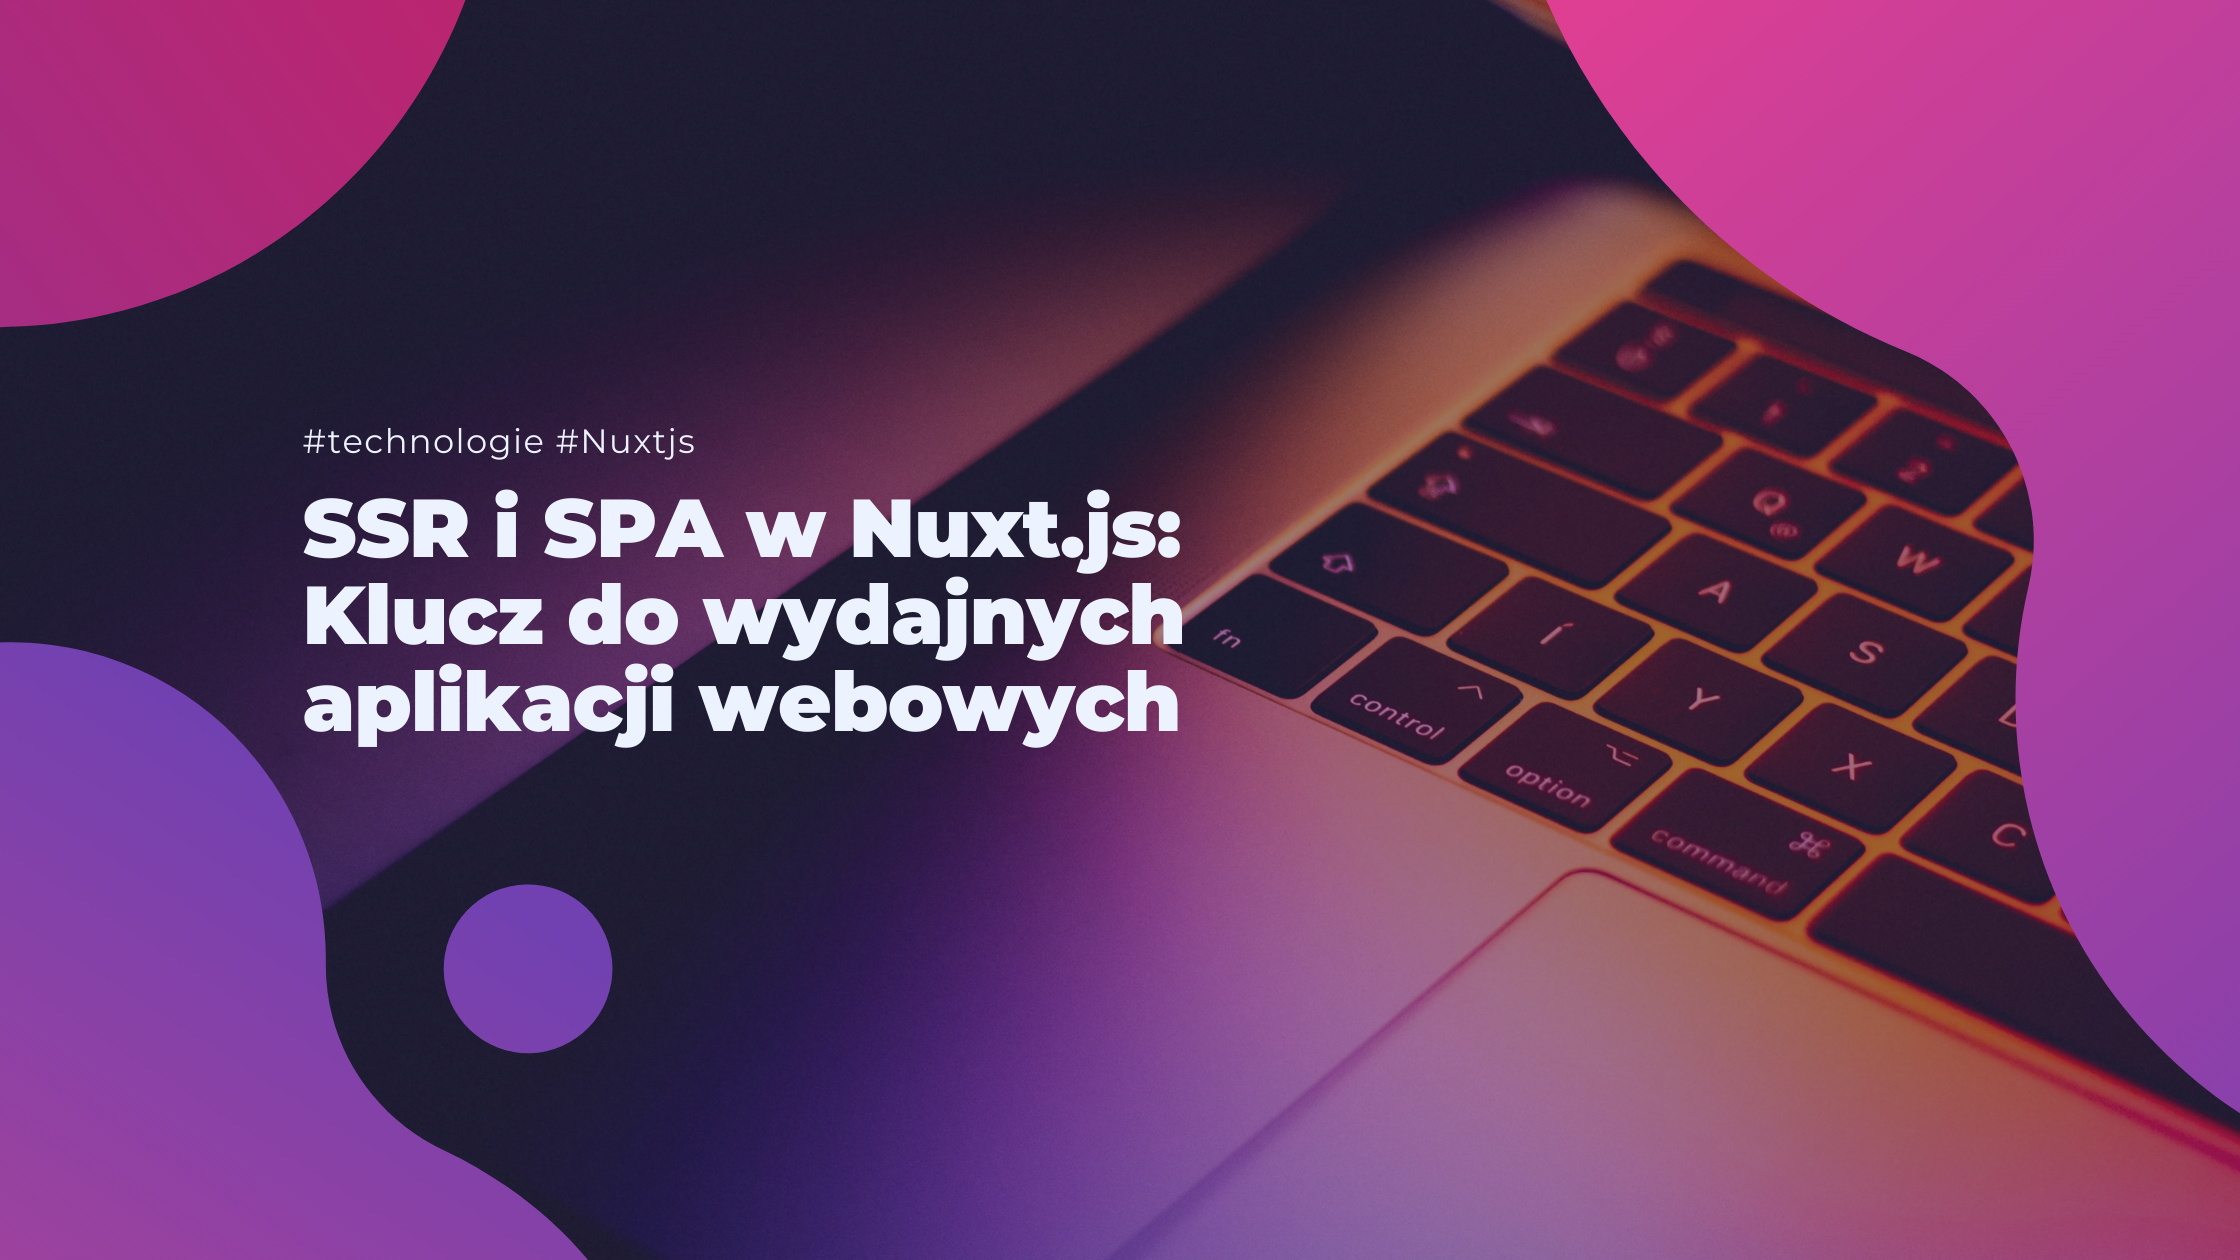 SSR i SPA w Nuxt.js: Klucz do wydajnych aplikacji webowych